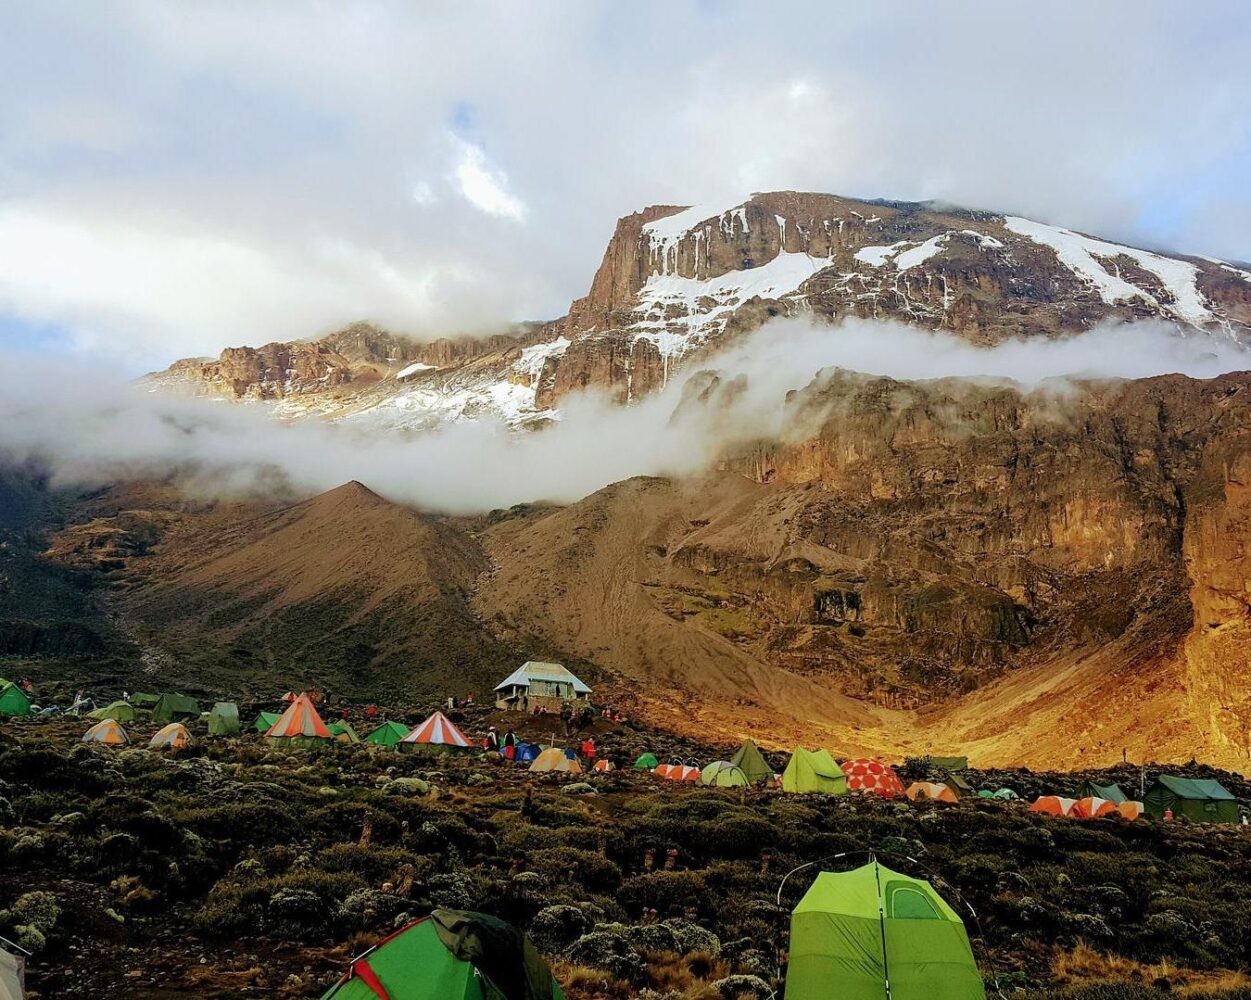 Gruppentour "Kilimanjaro Besteigung" Machame Route Hintergrundbild